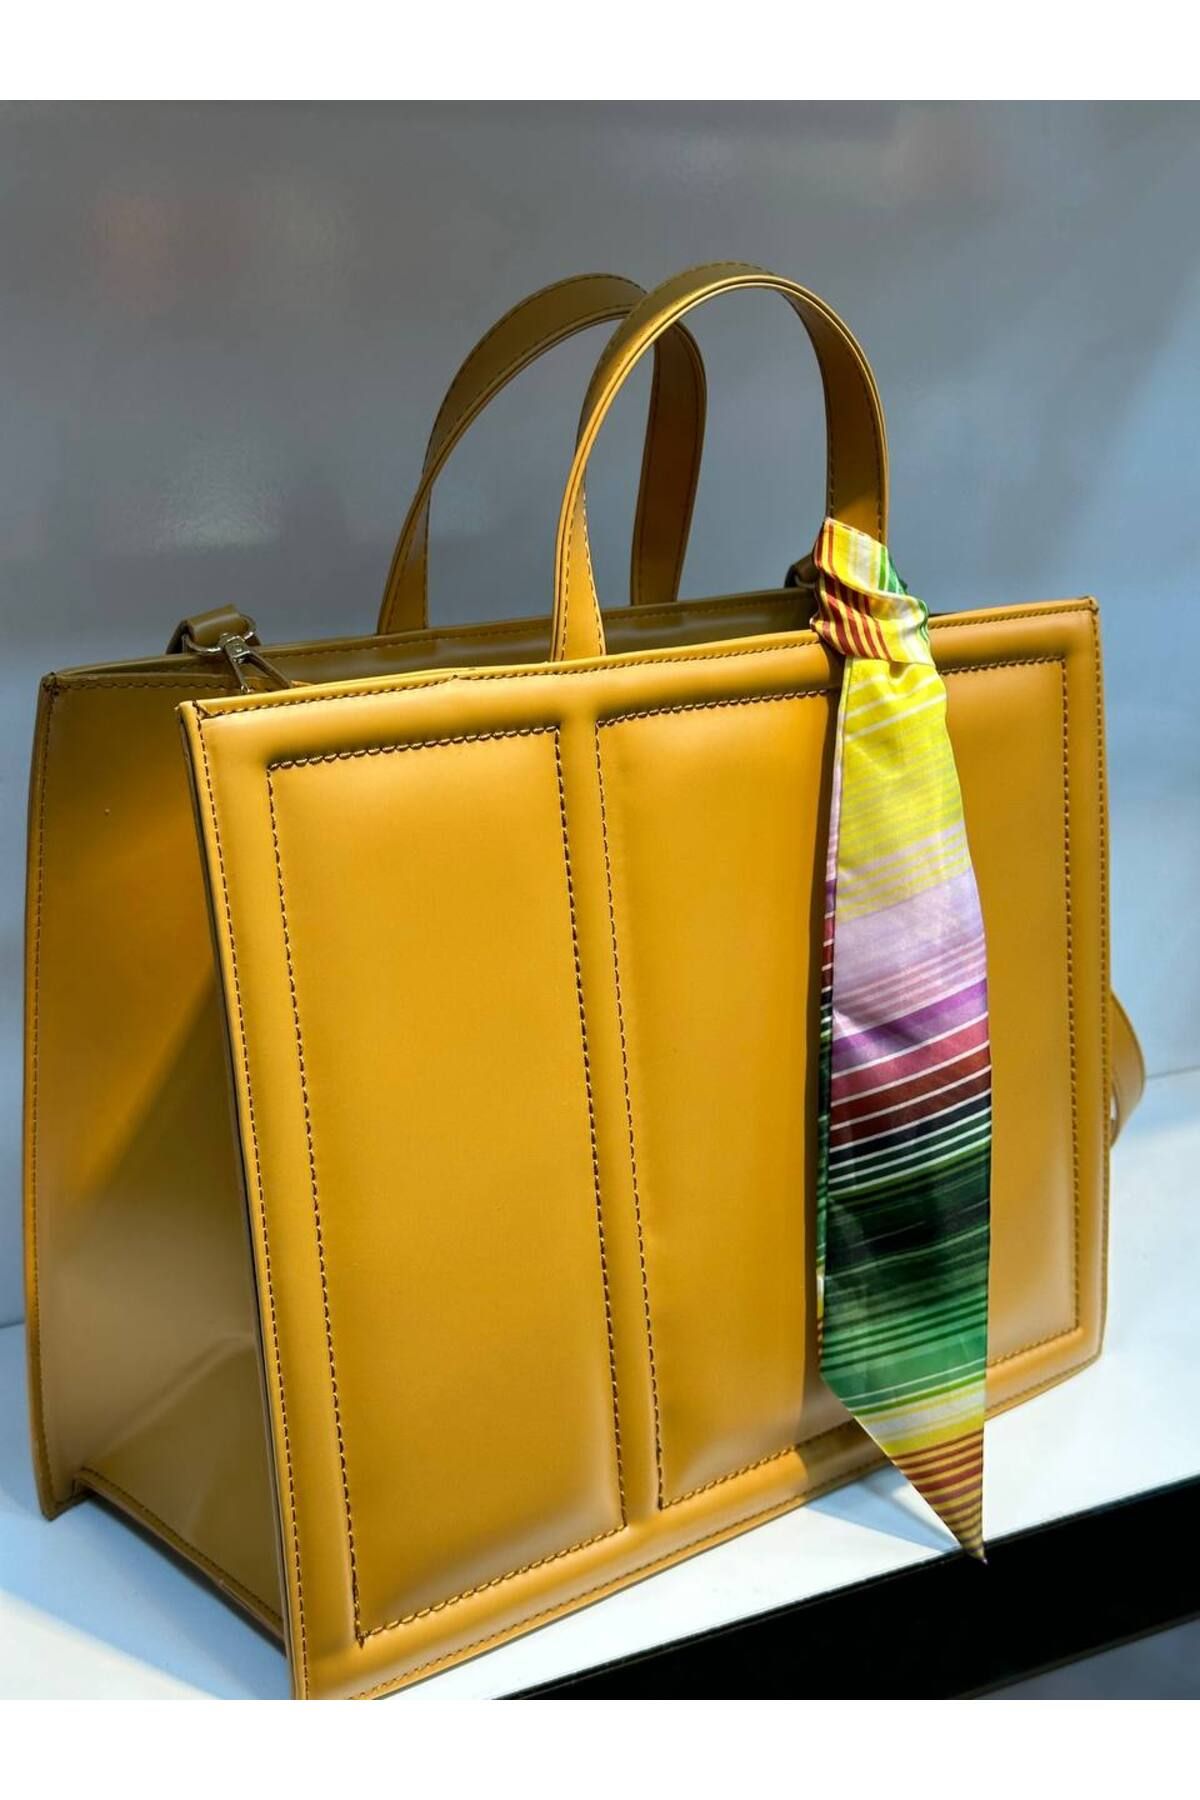 niss accessory evrak çantası kısa uzun askılı çanta şık çanta iş çantası  geniş çanta cepli çanta fularlı çanta